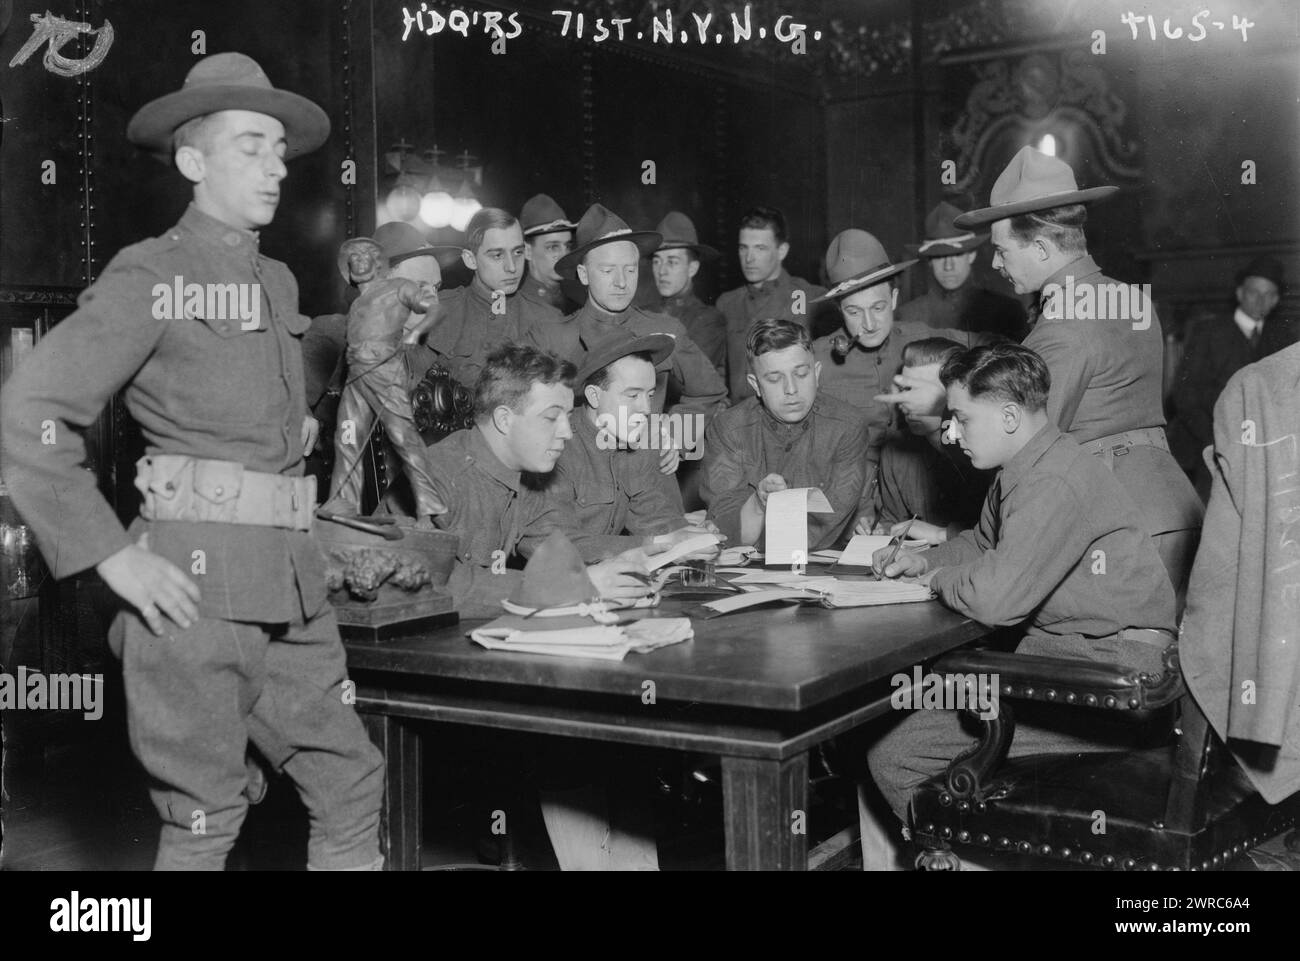 H'dq'rs., 71st N.Y.N.G., Foto zeigt das 71. Regiment der New Yorker Nationalgarde, das am 28. März 1917 in den Federal Field Service eingeteilt wurde, 26. März 1917, Glasnegative, 1 negativ: Glas Stockfoto